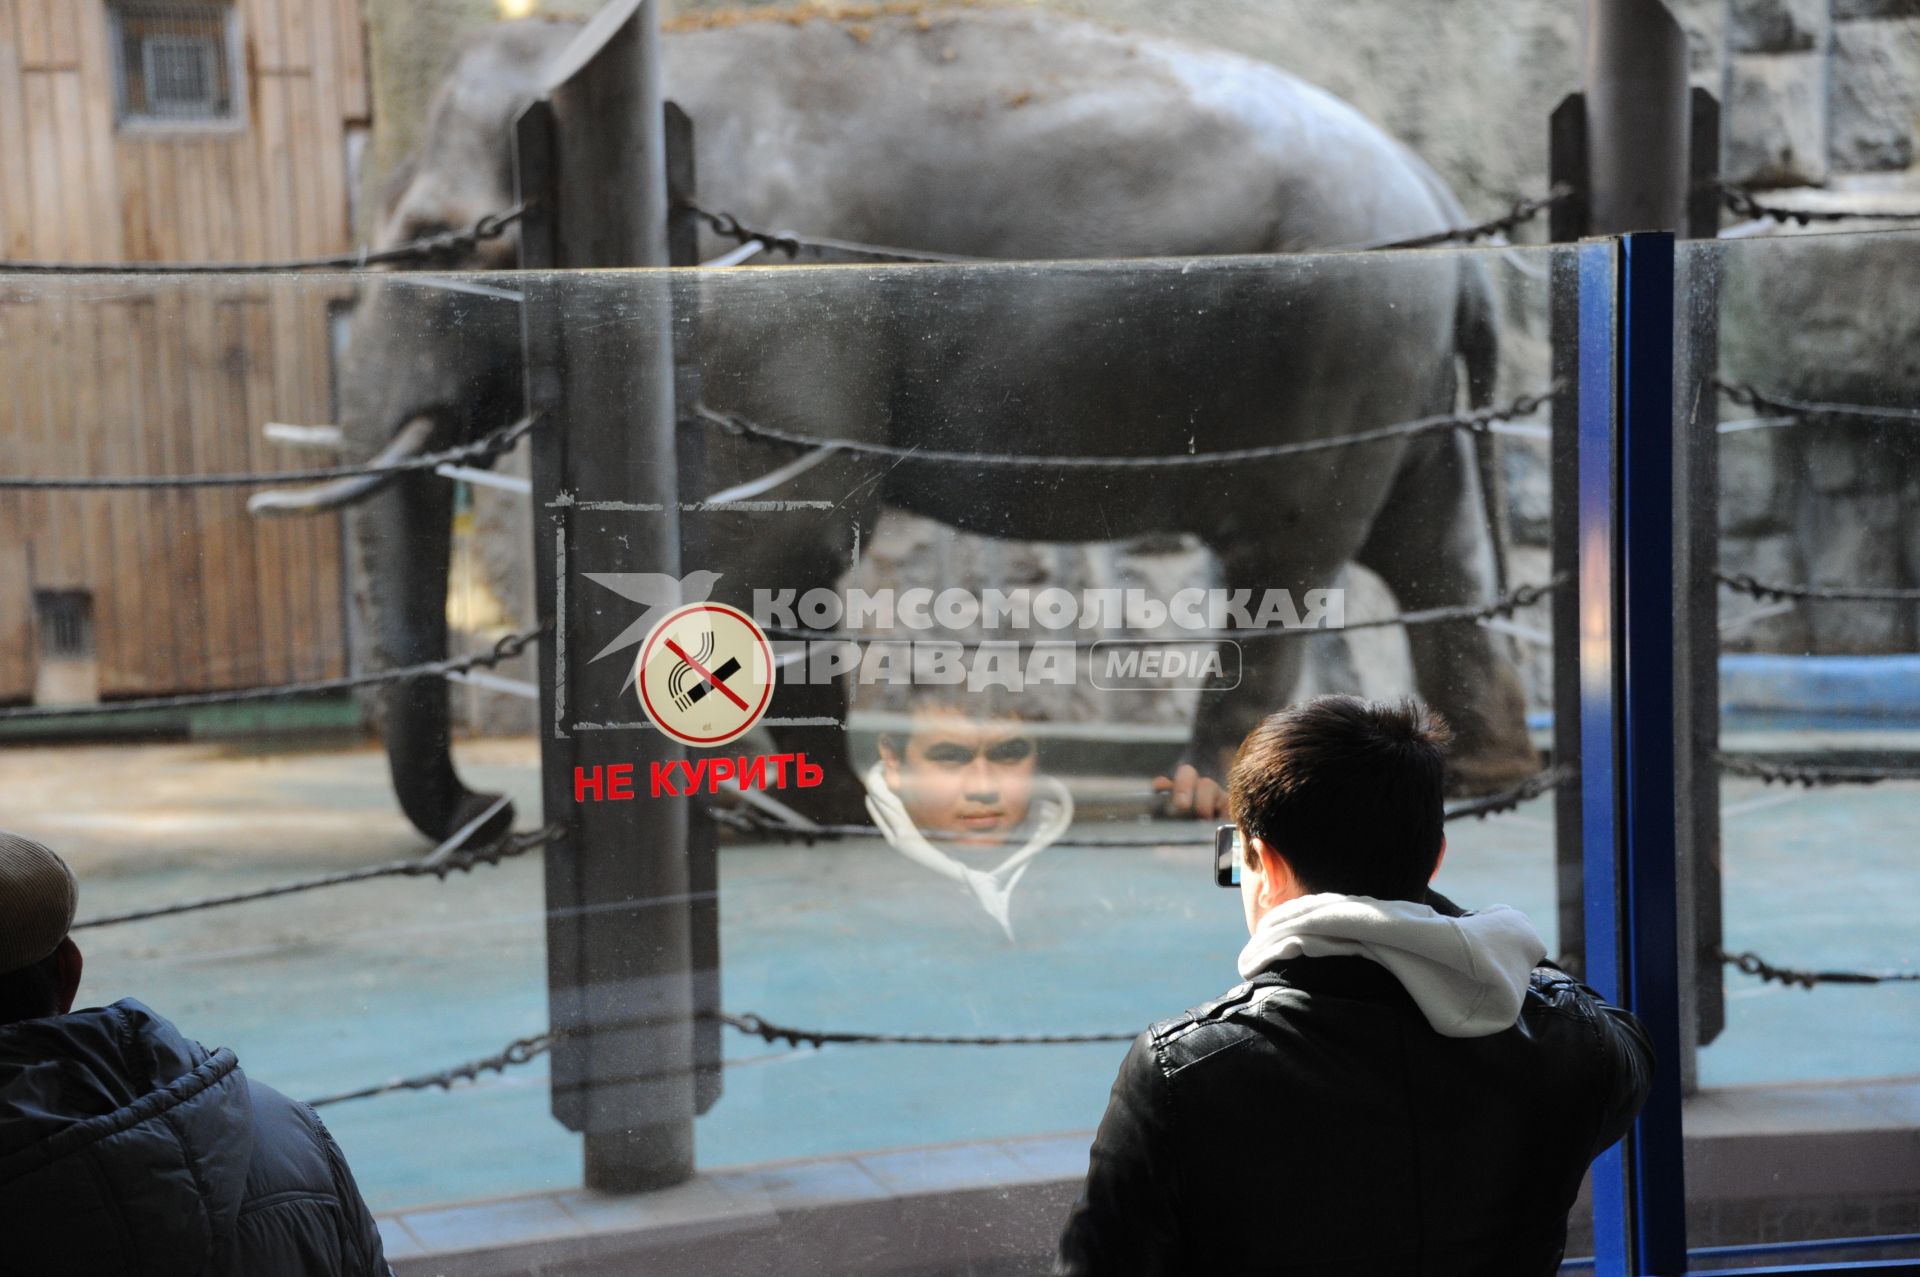 Московский зоопарк. На снимке: мужчина фотографирует слона через стекло.